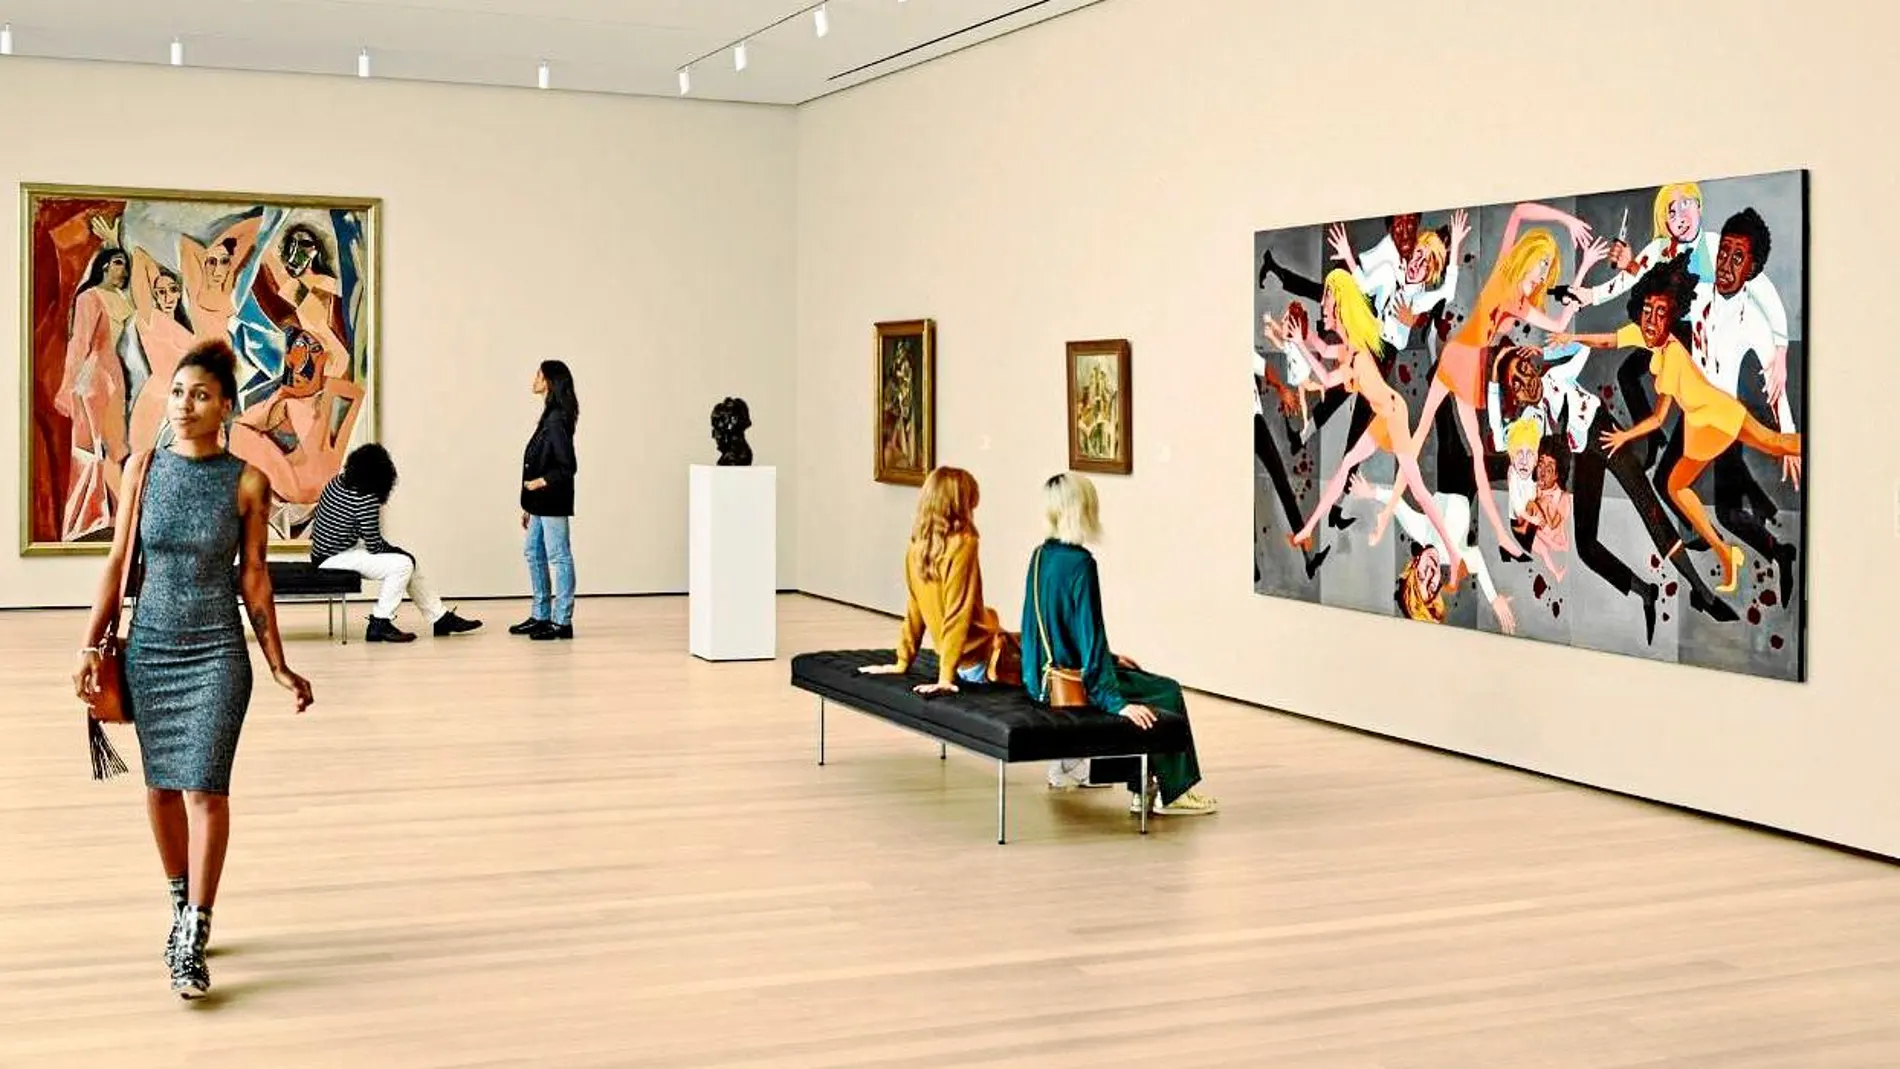 «Las señoritas de Avignon», de Picasso, ha sido puesta en contexto, entre otras piezas, con una escultura de Louise Bourgeois y un lienzo de la afroamericana Faith Ringgold / Moma